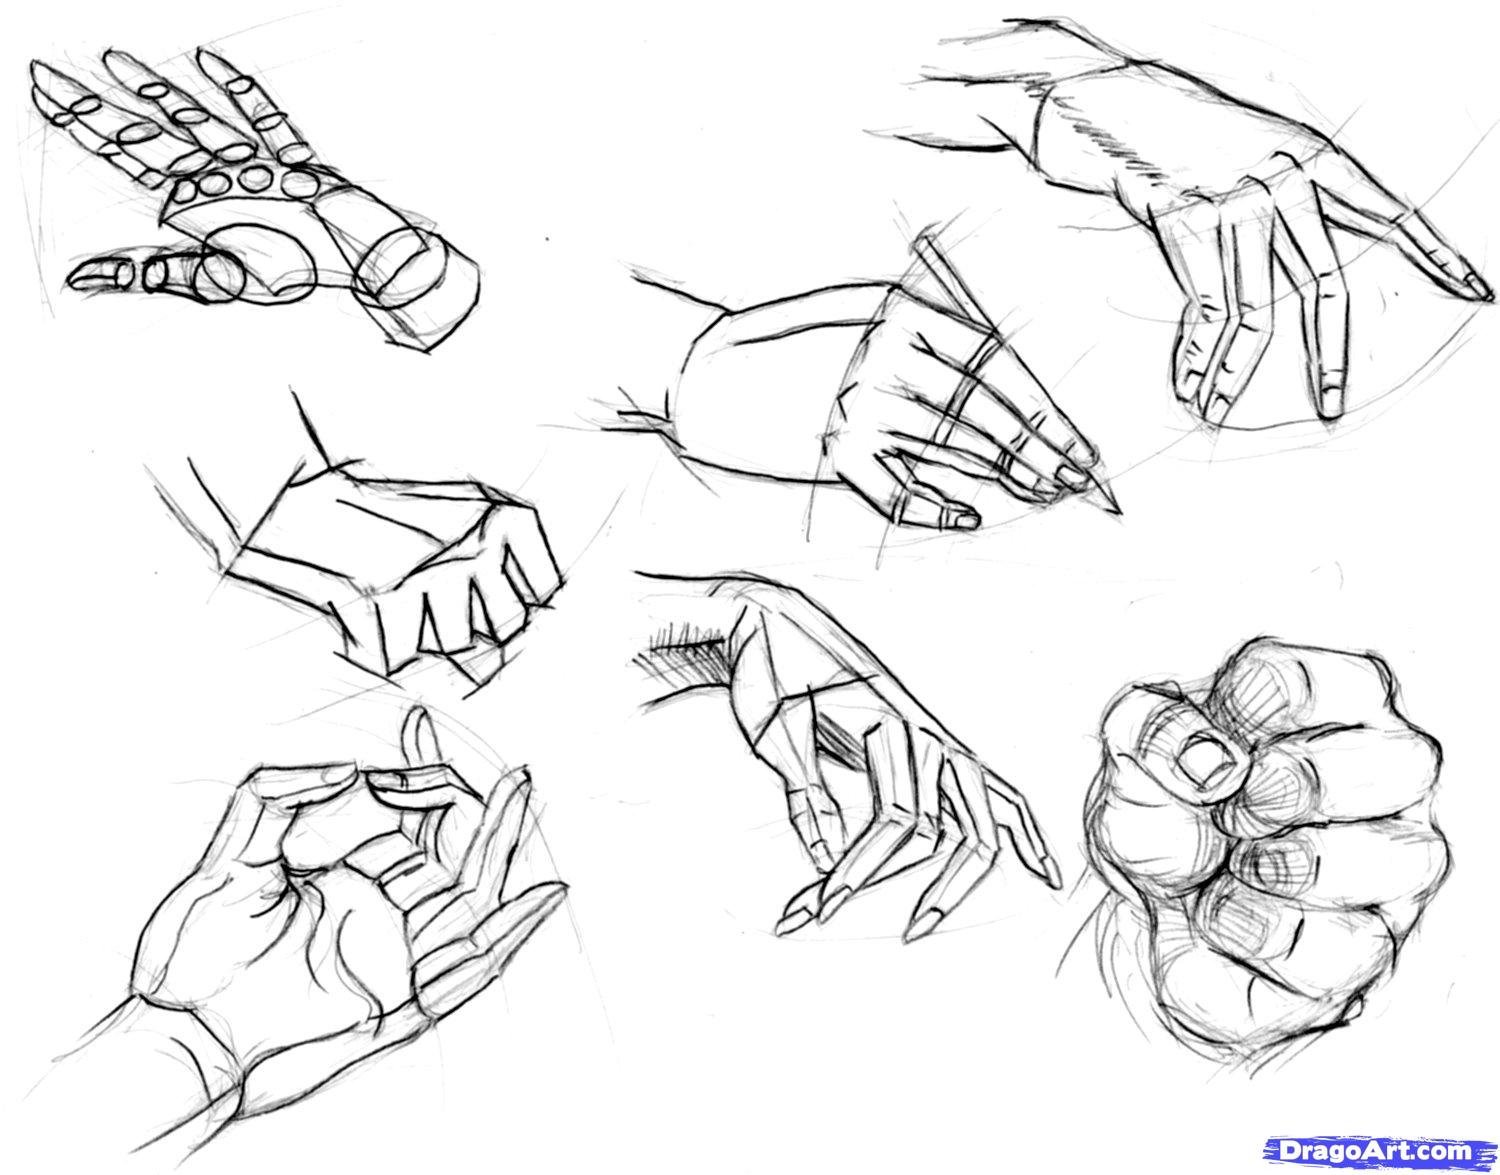 Как правильно держать кулак. Зарисовки рук. Наброски кистей рук. Скетчи рук. Уроки рисования рук.